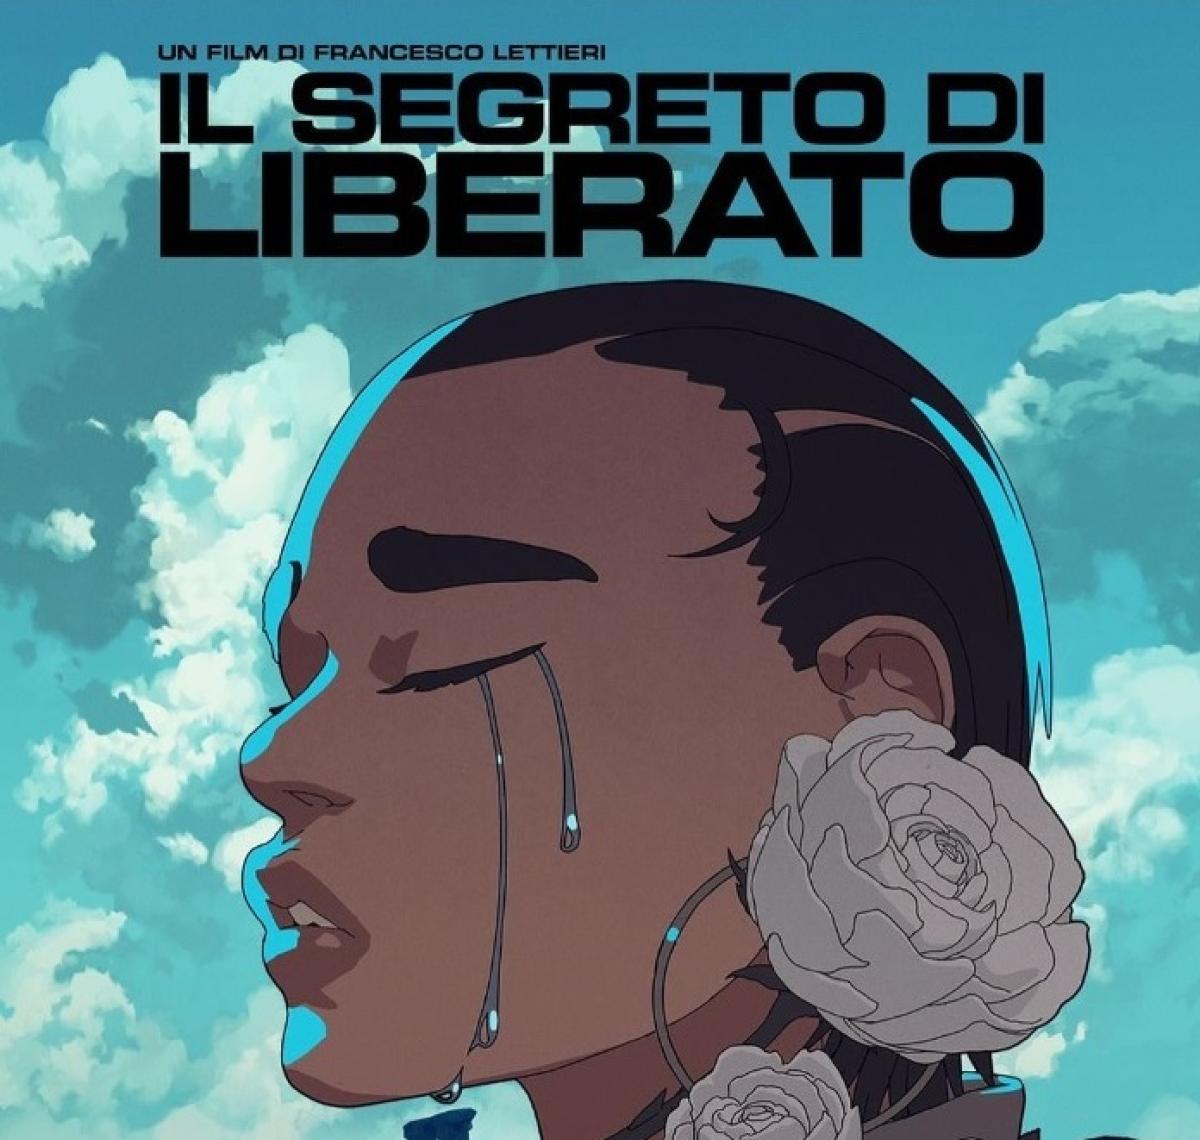 Il segreto di Liberato, trionfo al botteghino con oltre 200mila euro di incassi per il film del rapper napoletano